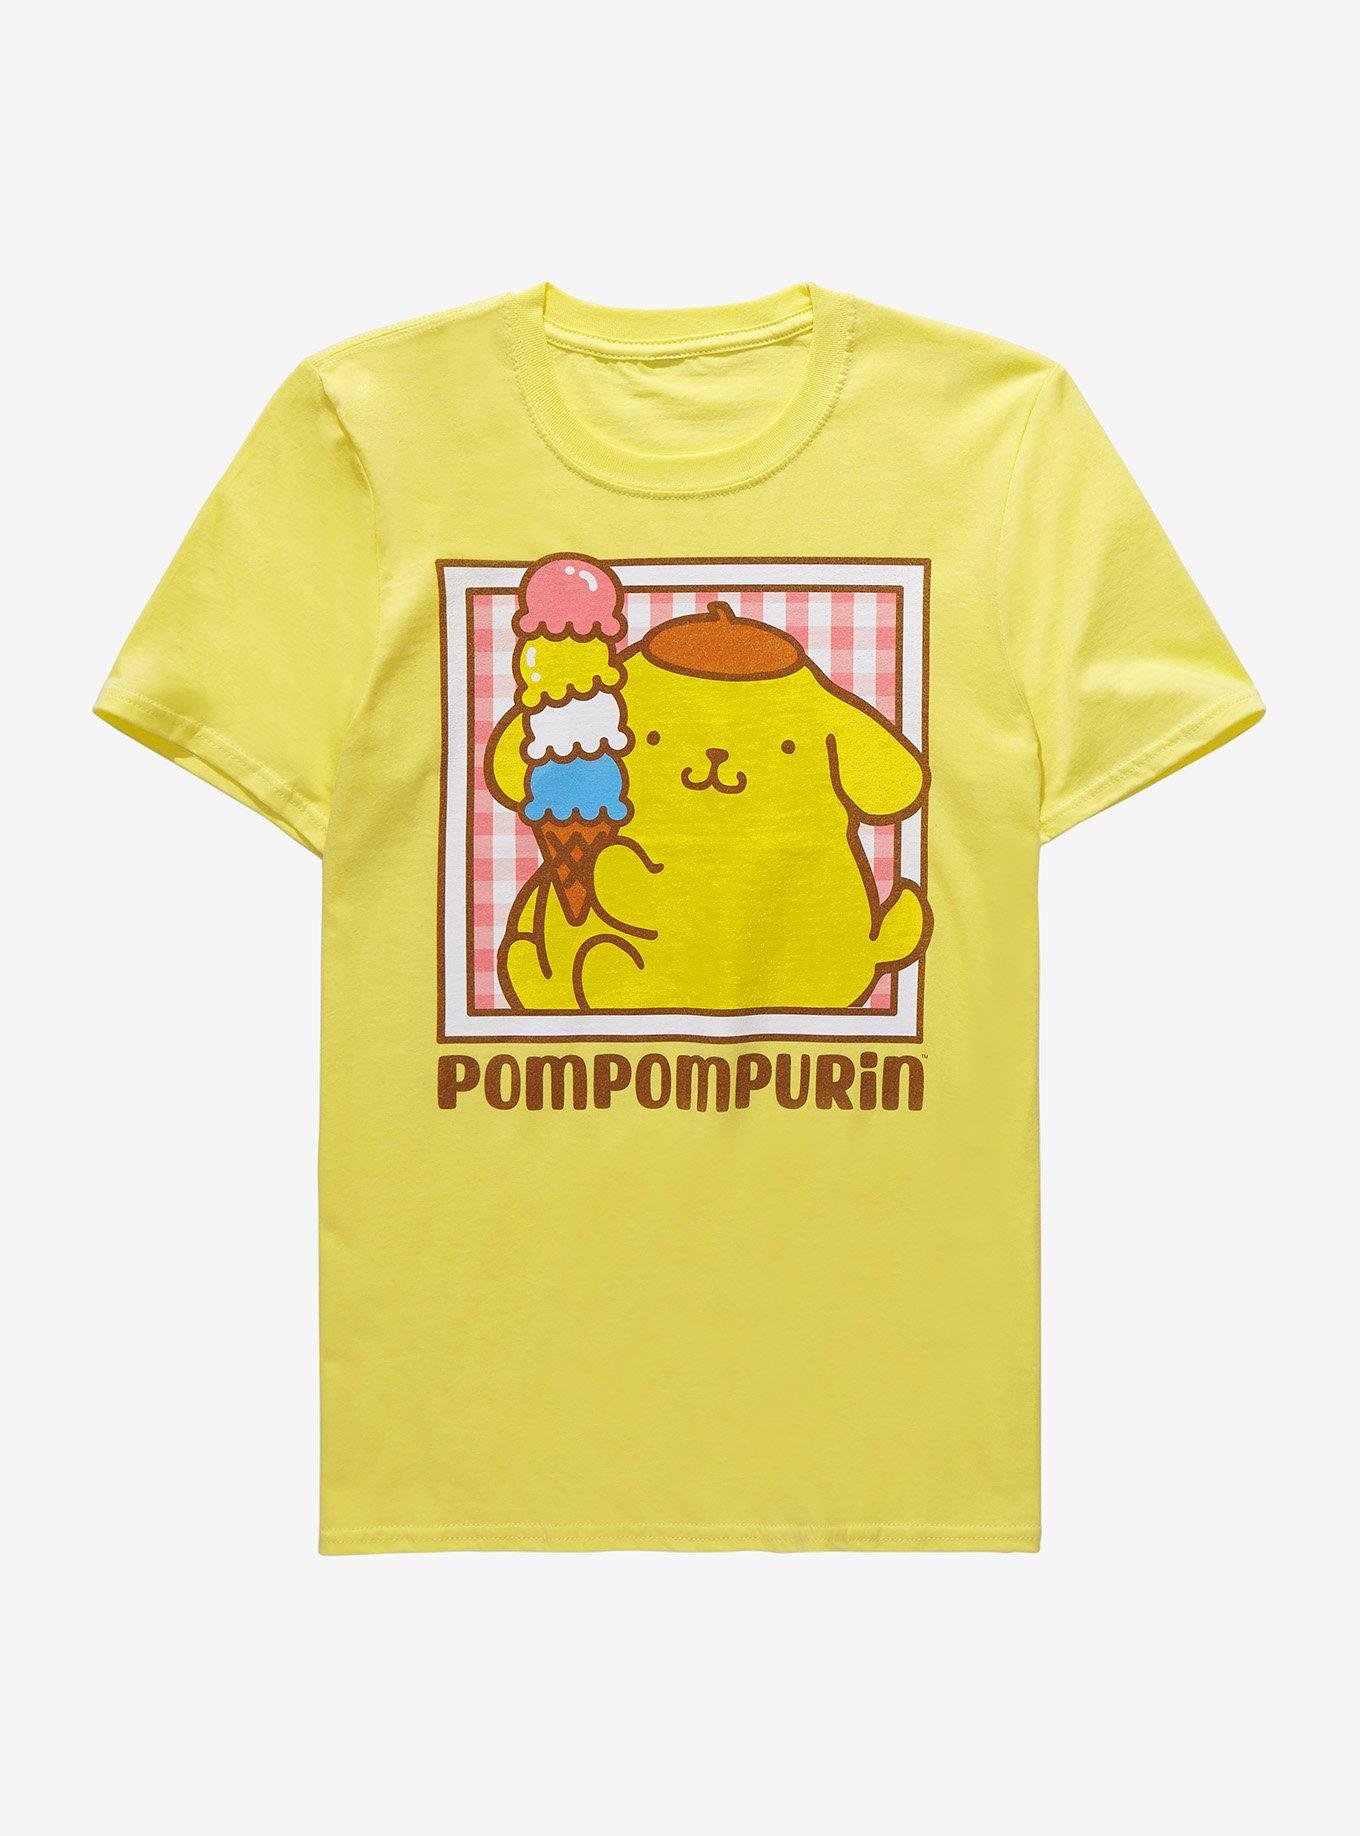 Pompompurin Ice Cream Boyfriend Fit Girls T-Shirt, MULTI, hi-res